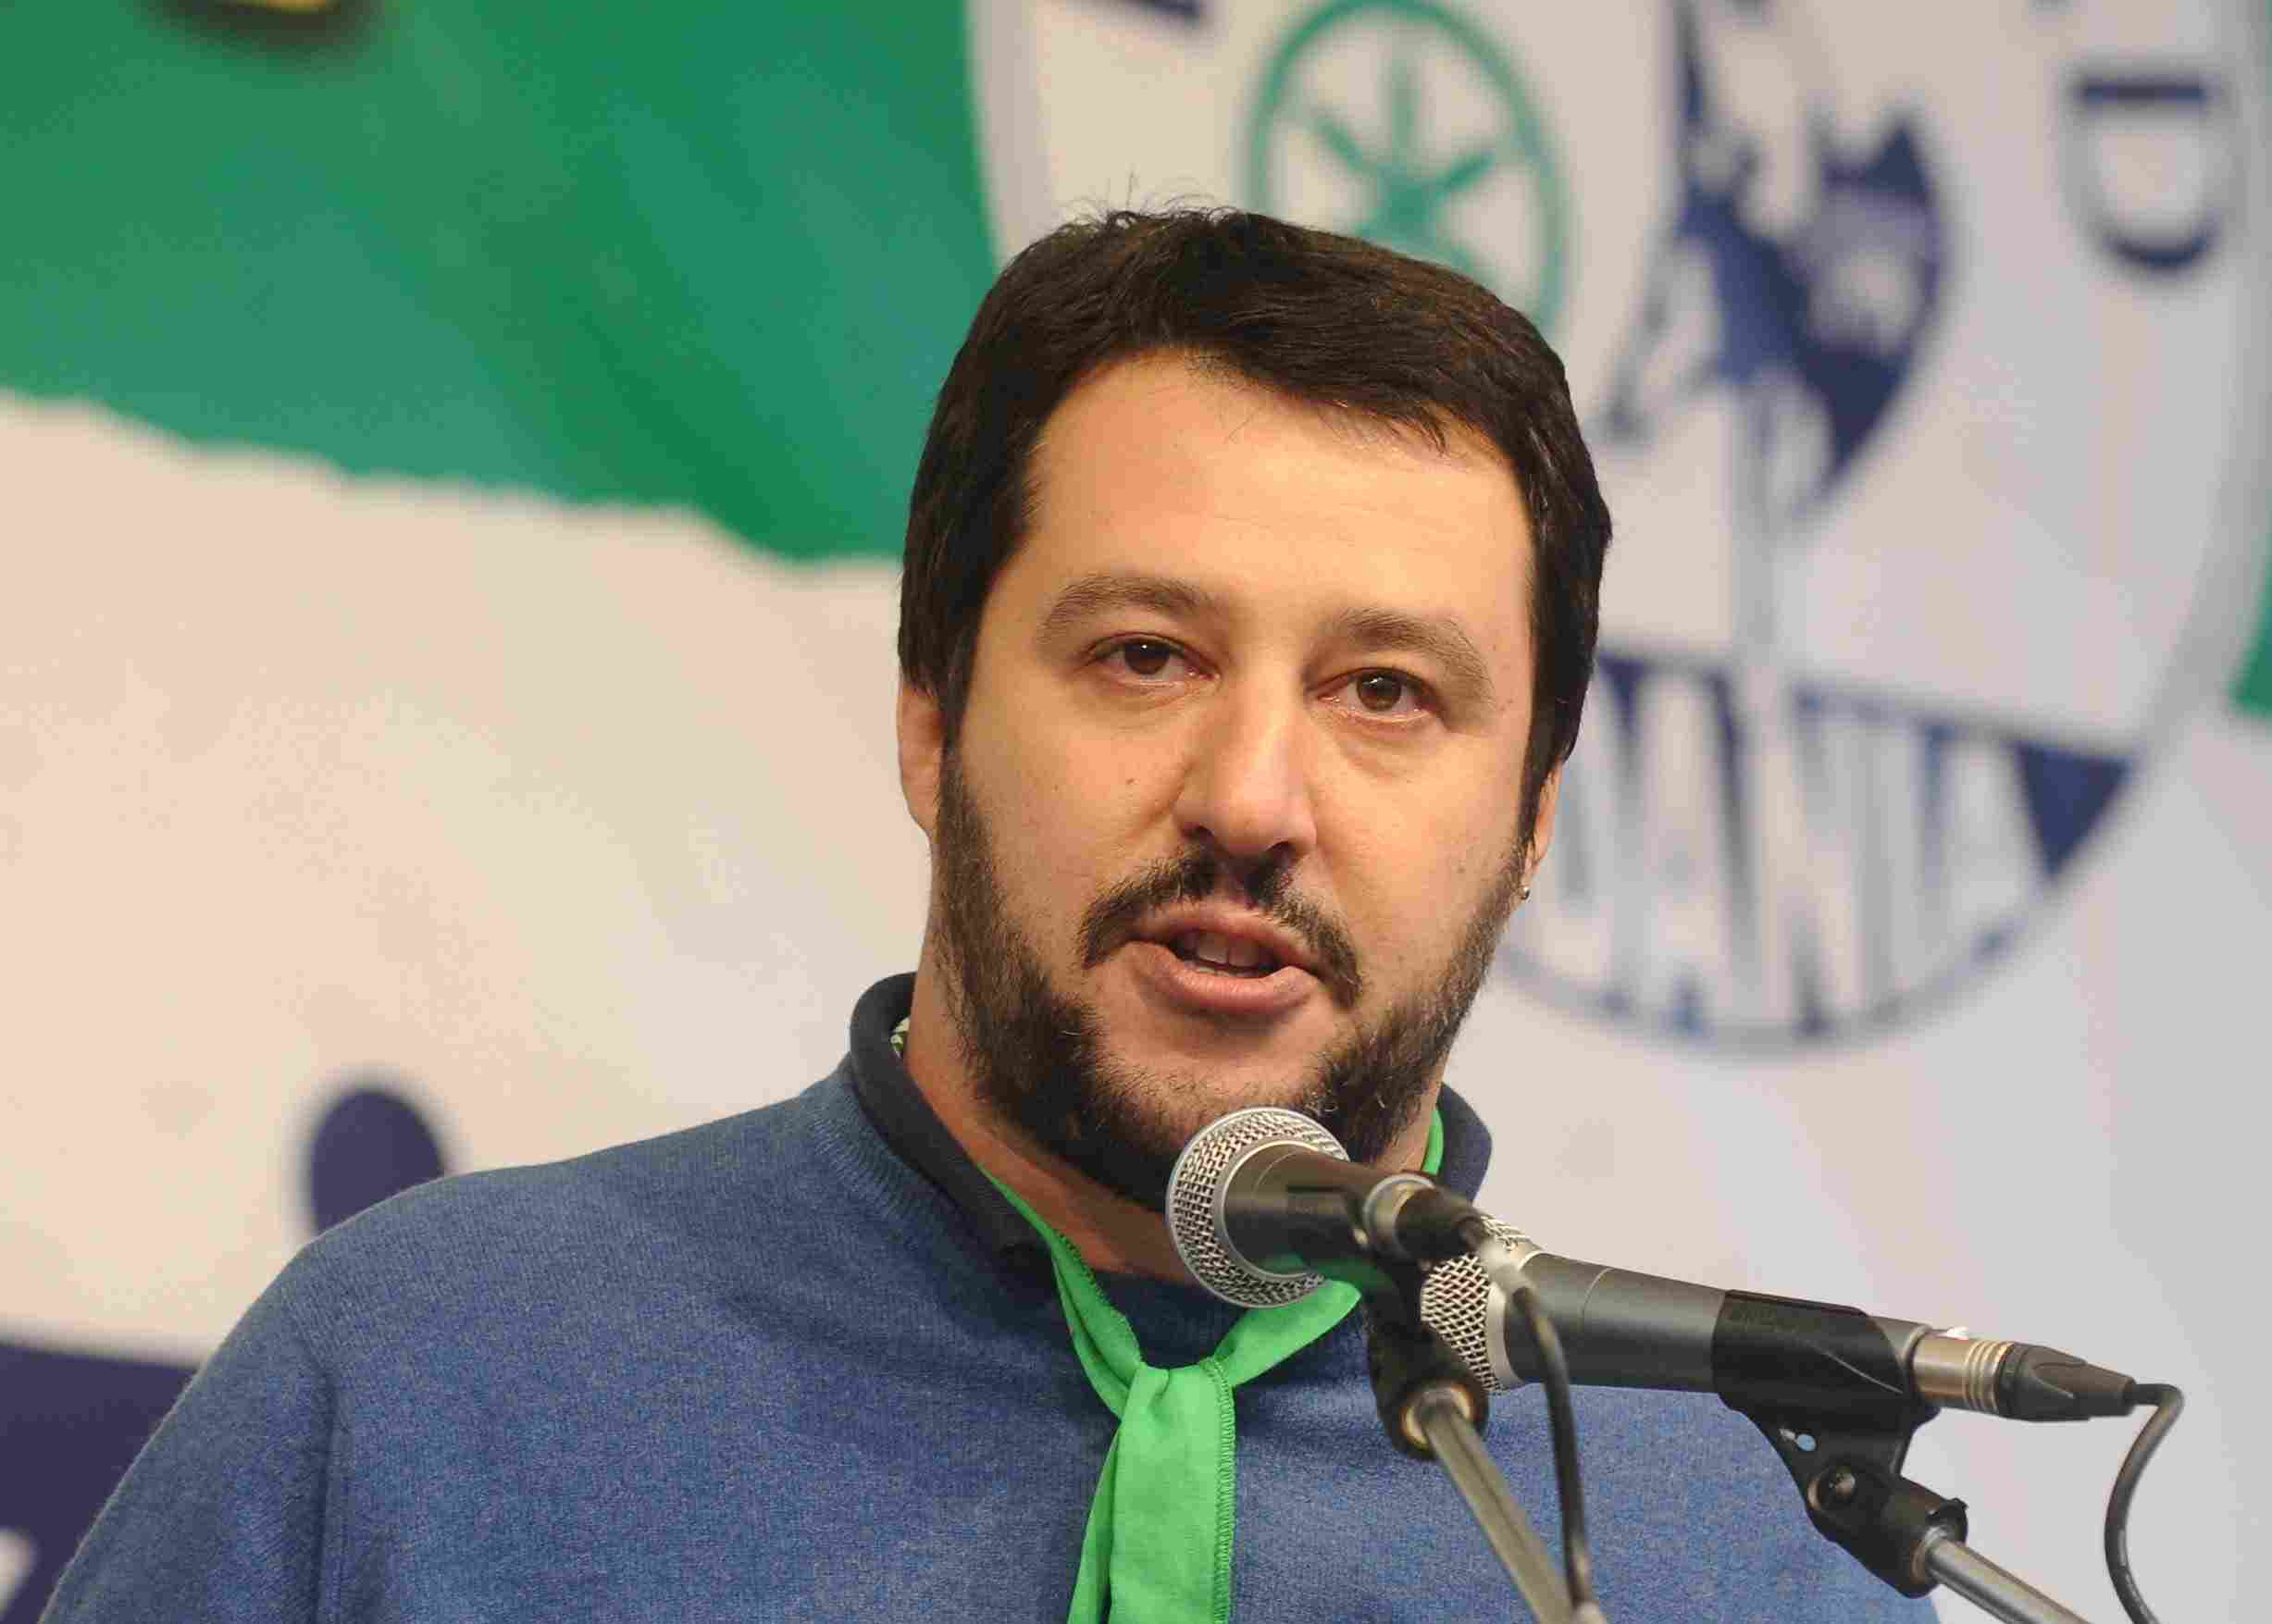 Immigrazione: Salvini, Renzi e Alfano sporchi sangue